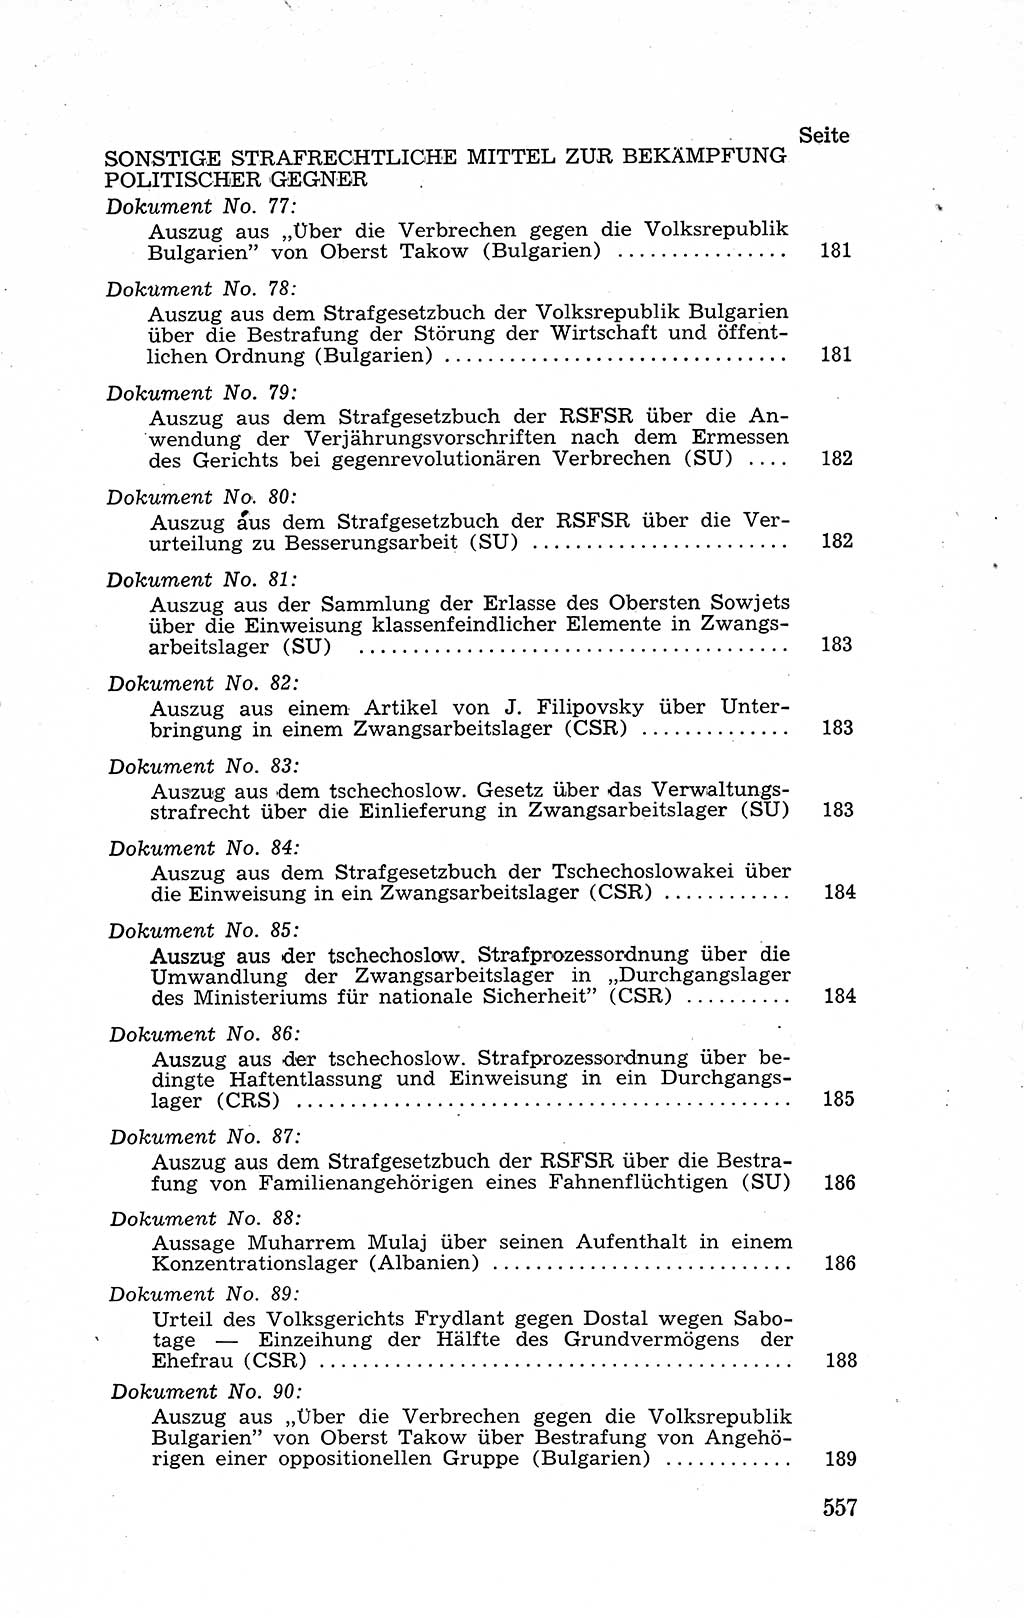 Recht in Fesseln, Dokumente, Internationale Juristen-Kommission [Bundesrepublik Deutschland (BRD)] 1955, Seite 557 (R. Dok. IJK BRD 1955, S. 557)